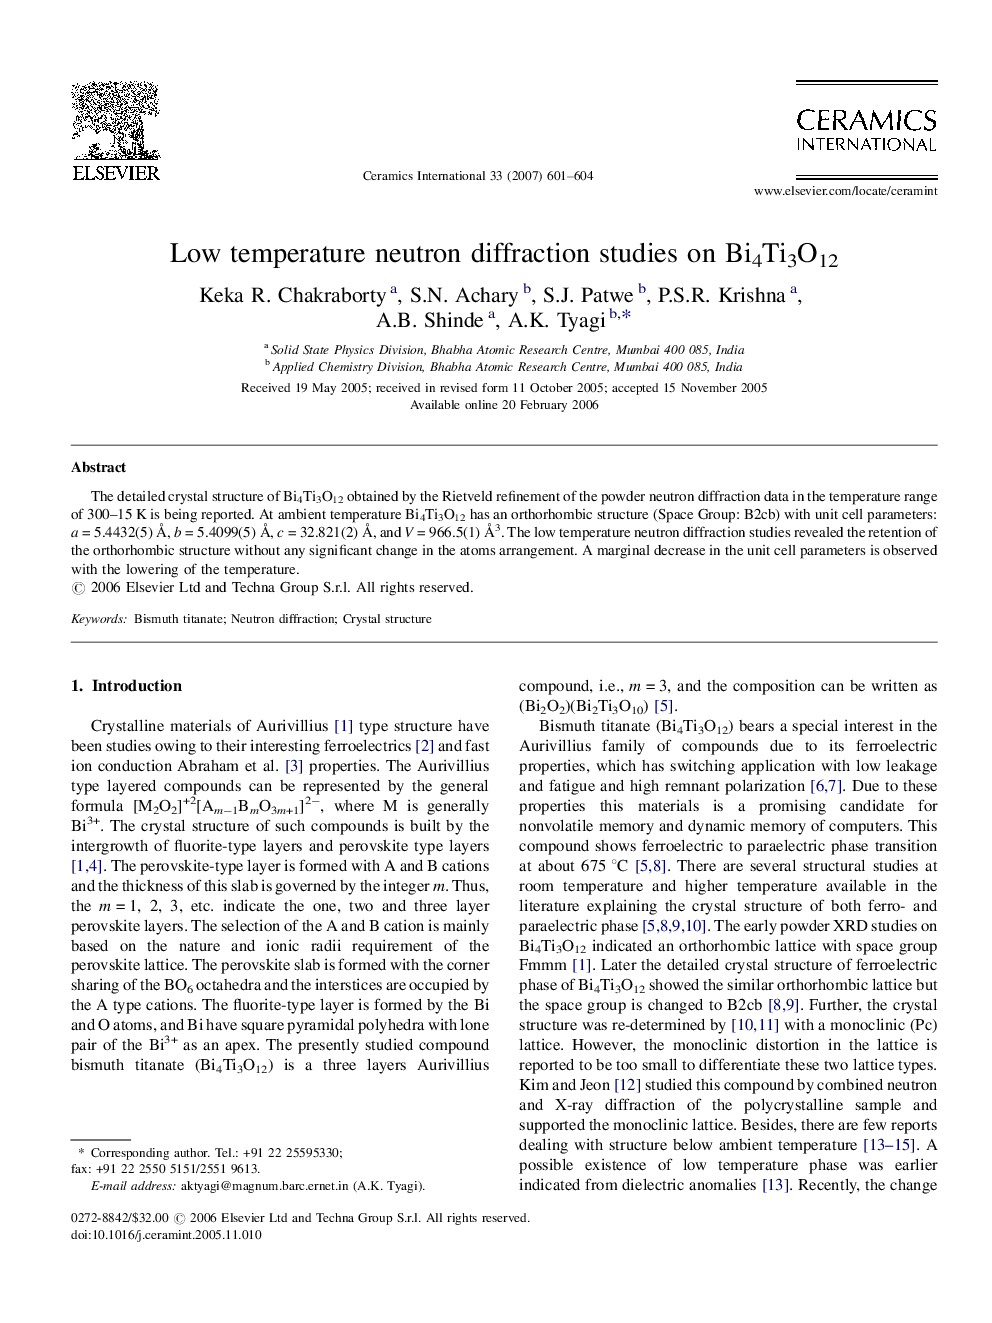 Low temperature neutron diffraction studies on Bi4Ti3O12